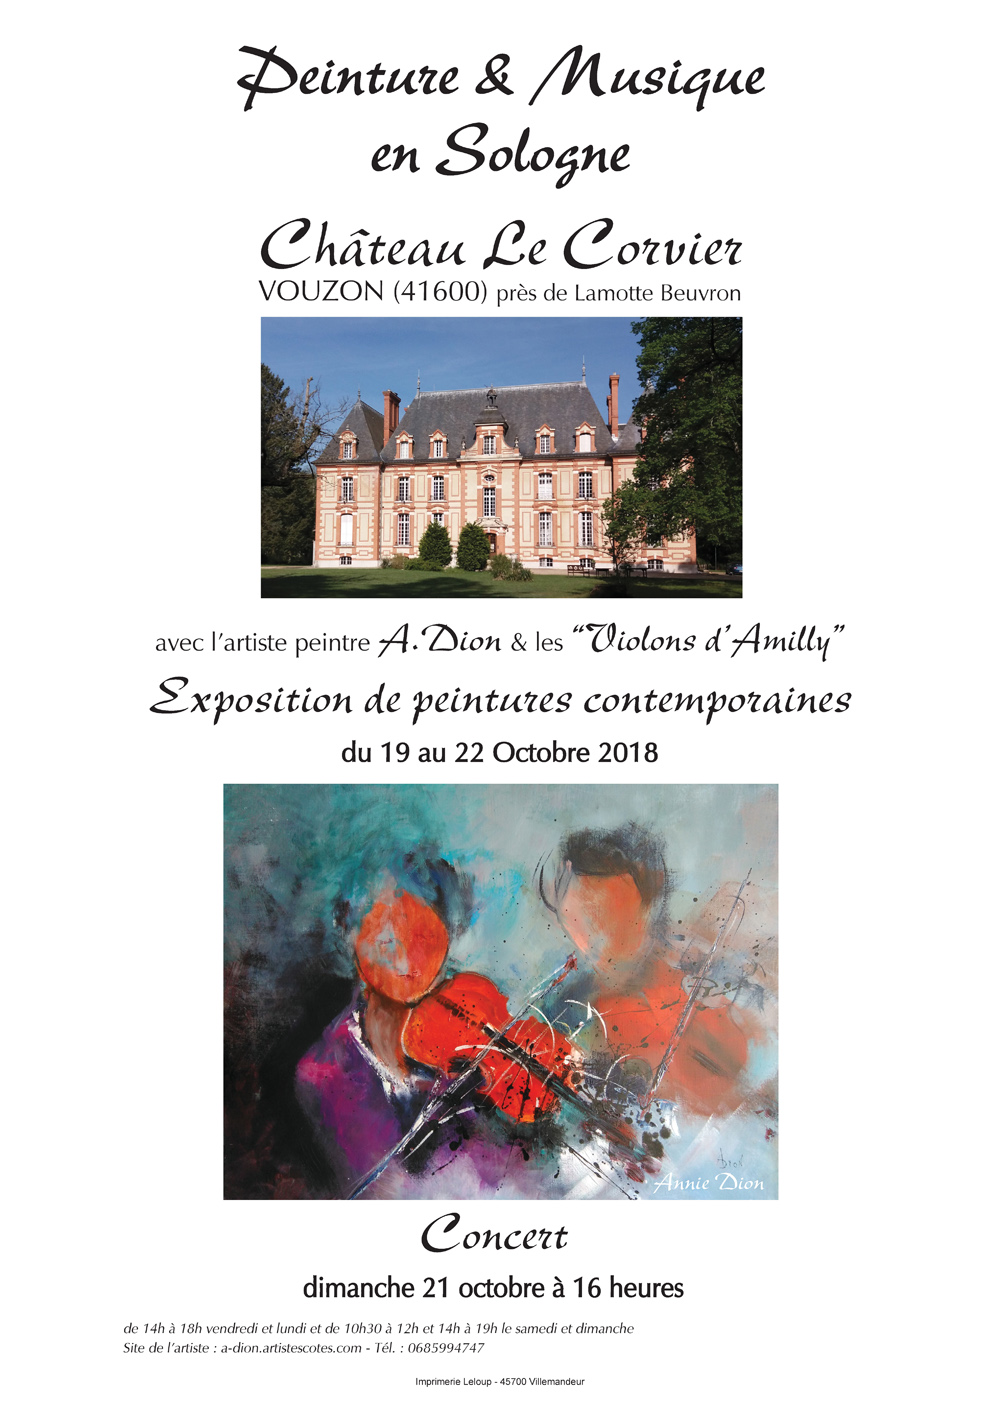 Vouzon - Château le Corvier